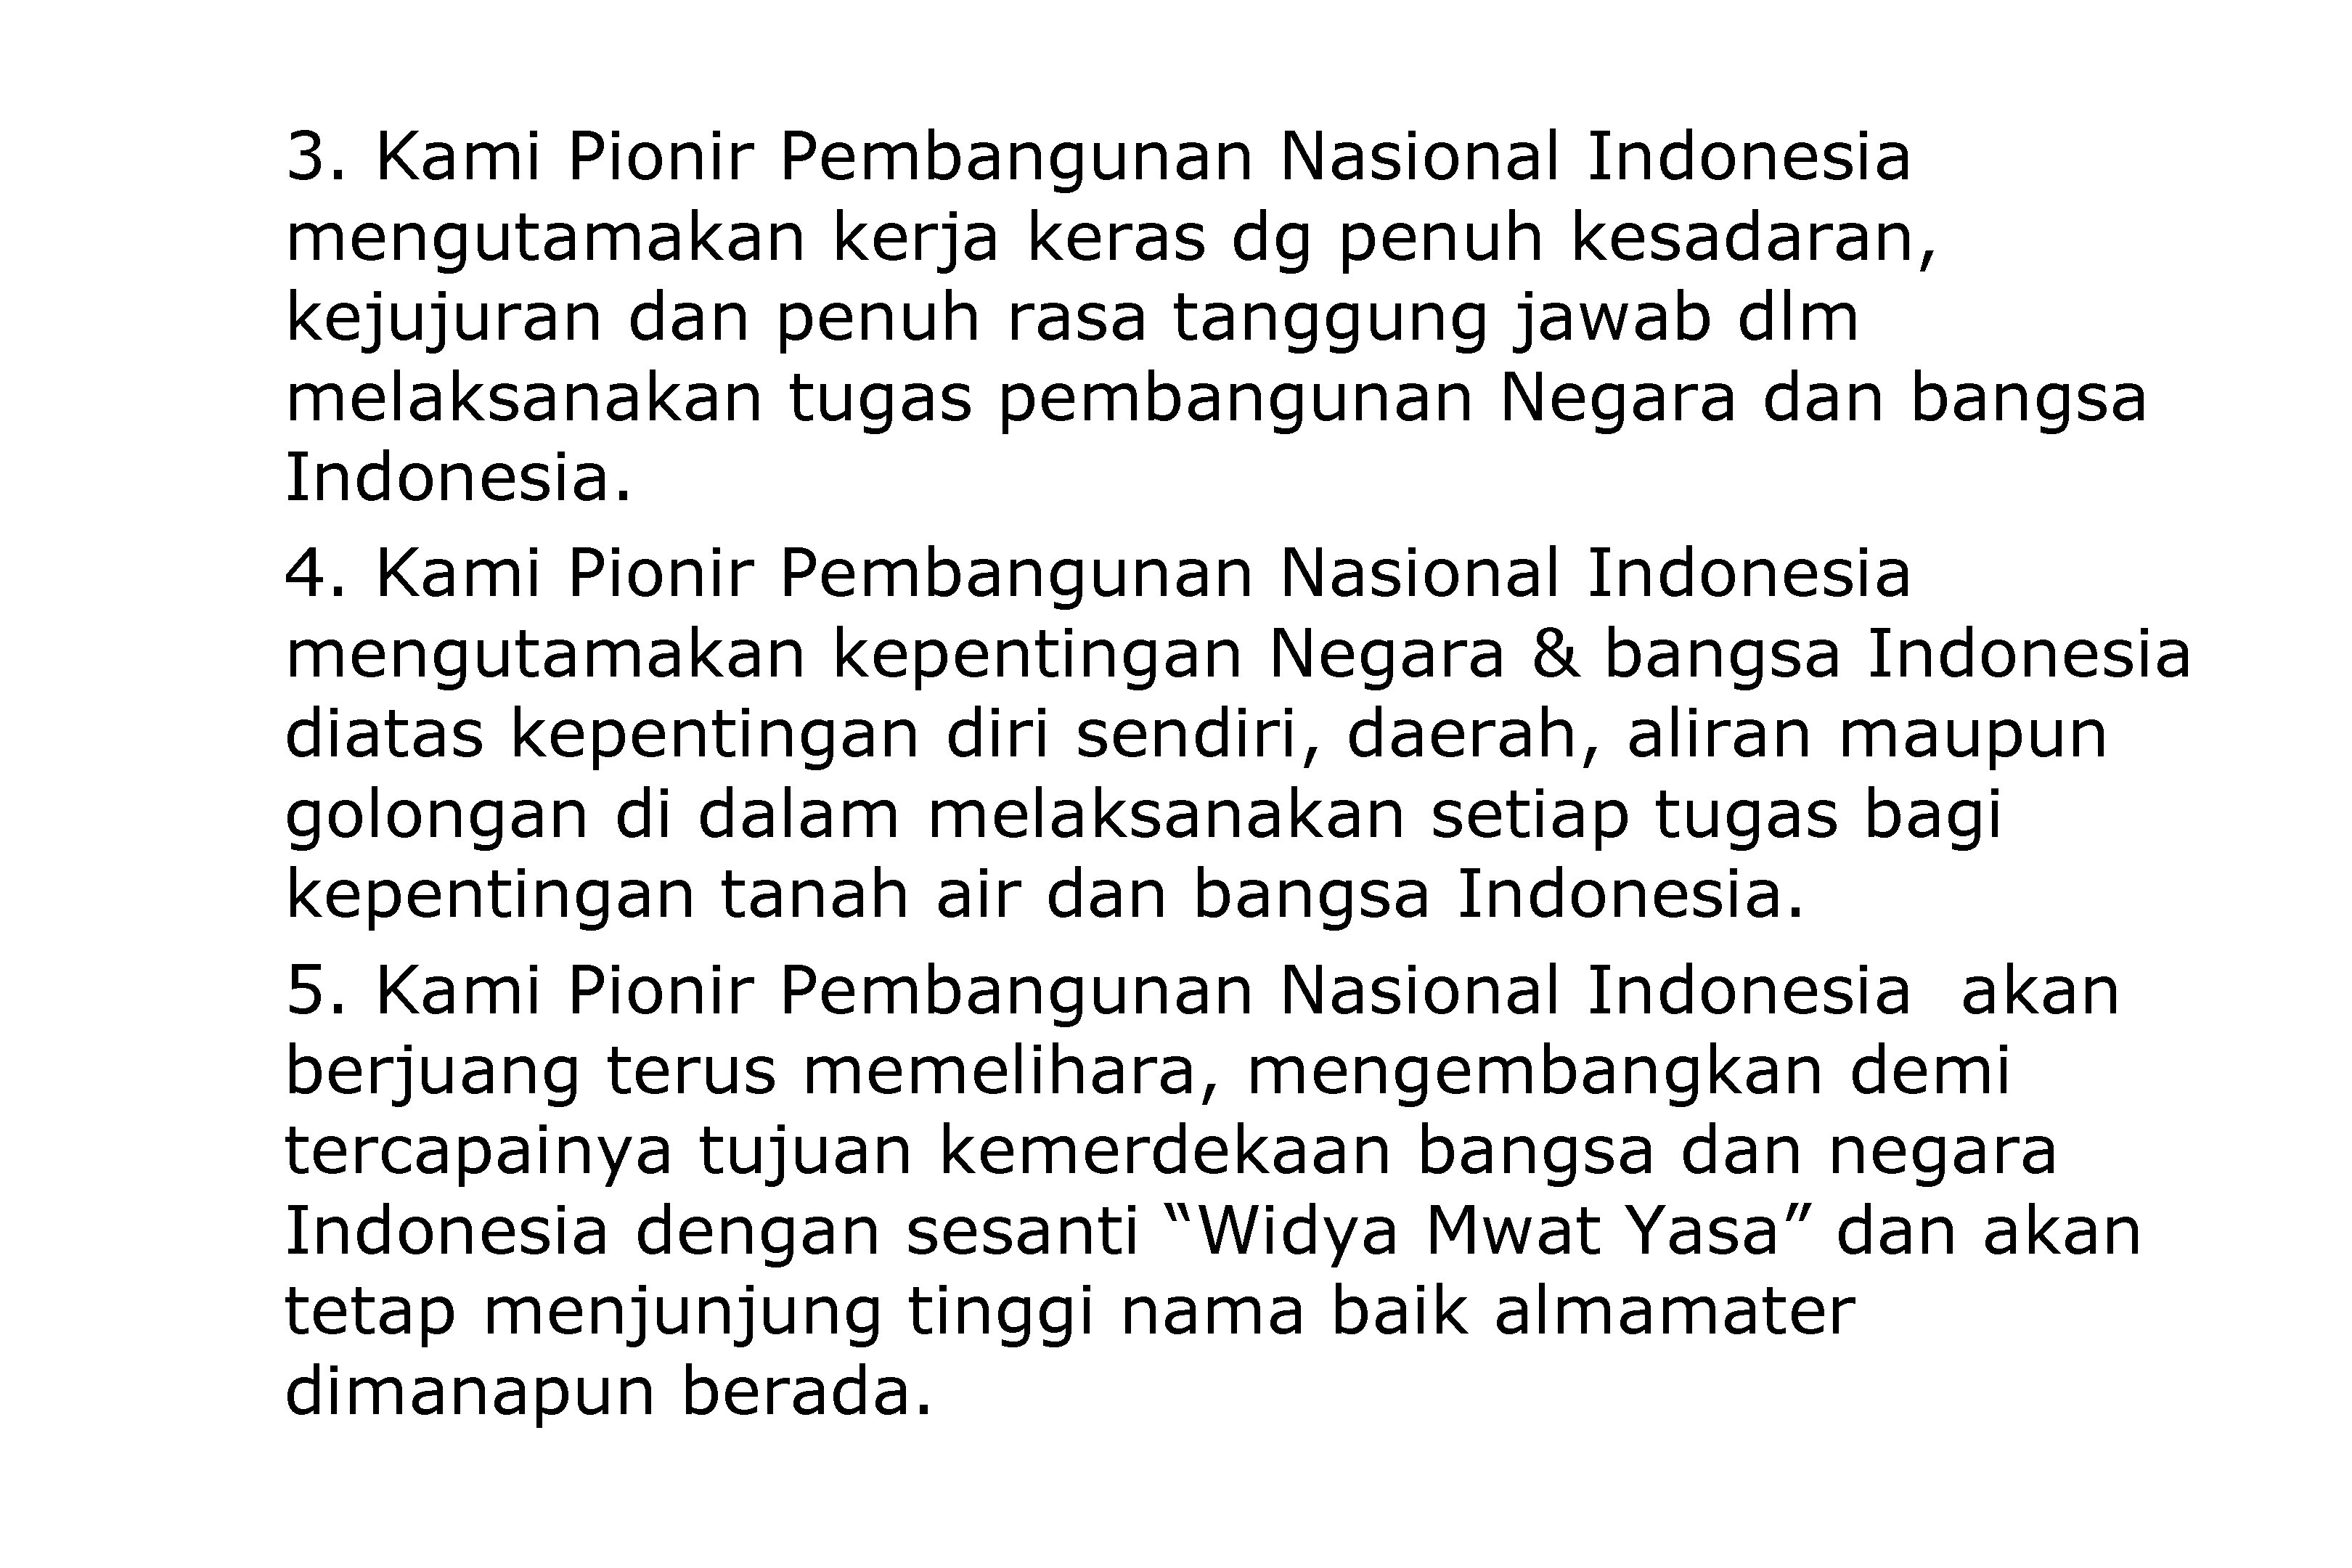 3. Kami Pionir Pembangunan Nasional Indonesia mengutamakan kerja keras dg penuh kesadaran, kejujuran dan